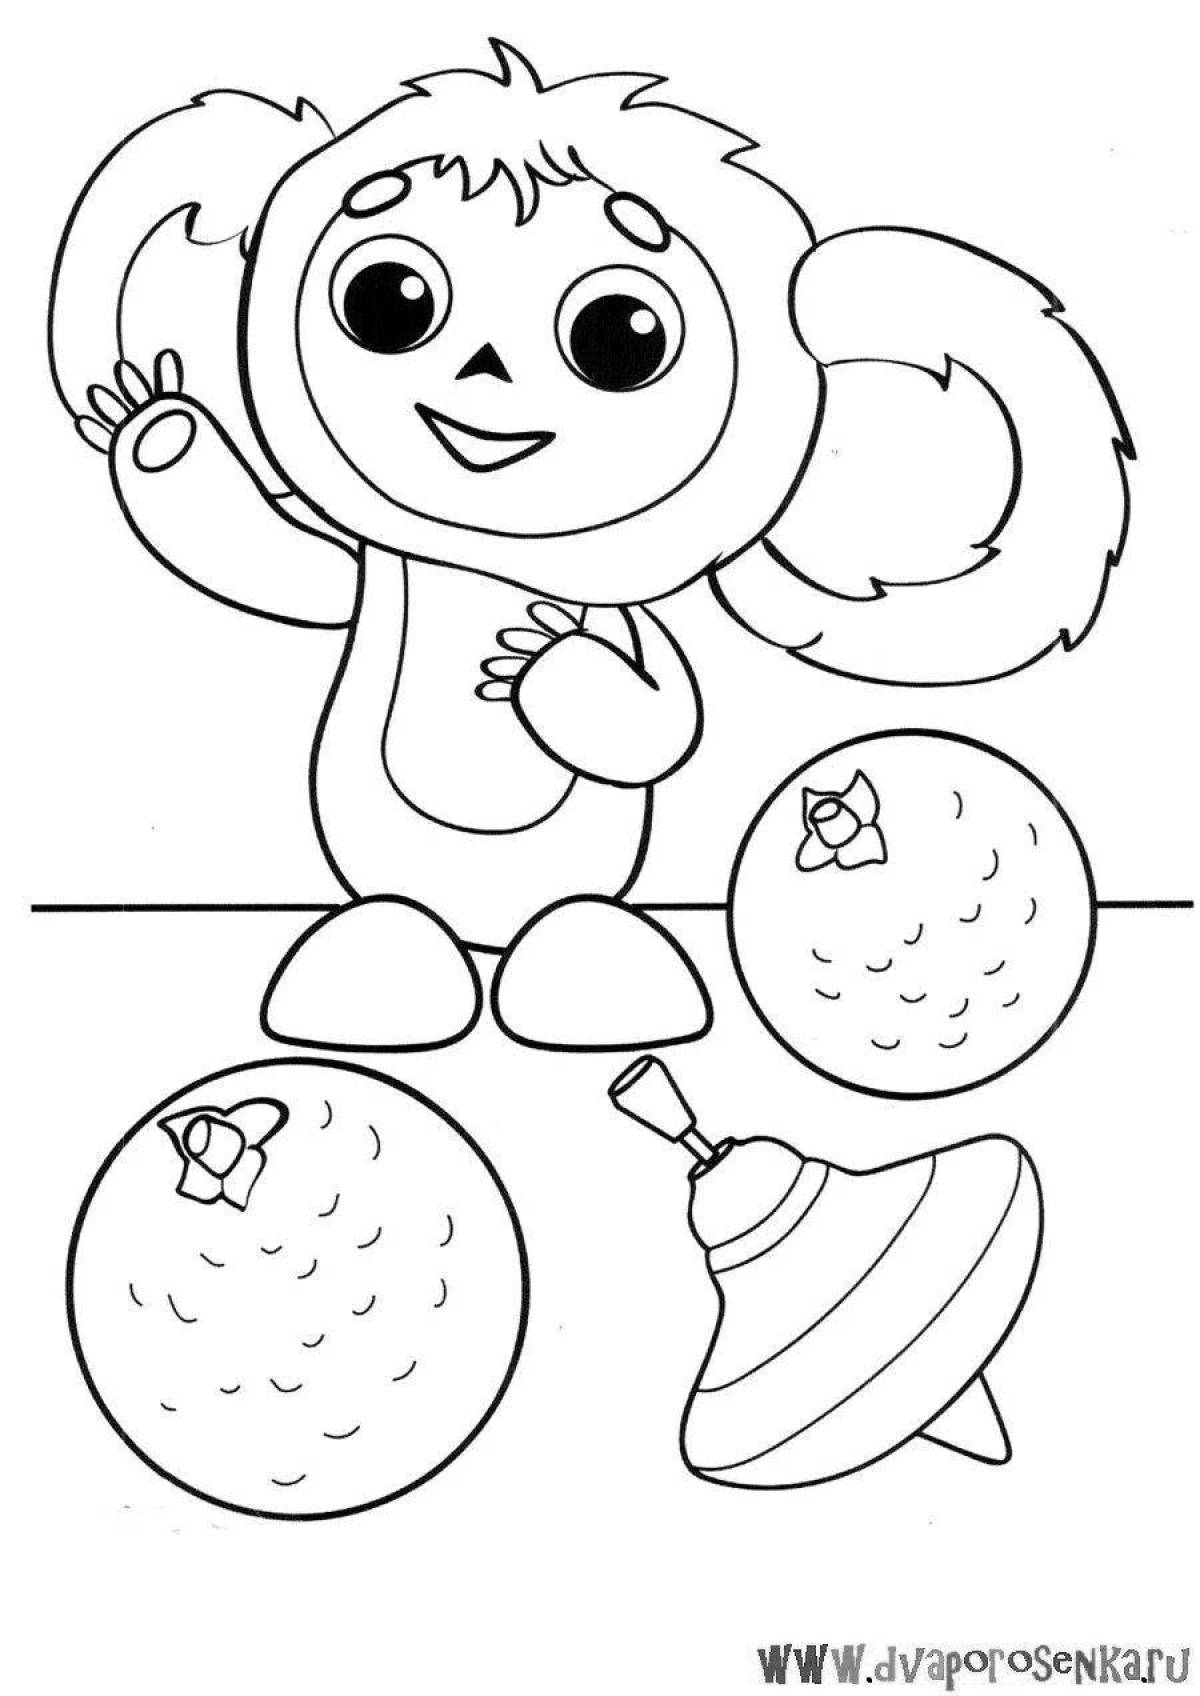 Refreshing cheburashka antistress coloring book